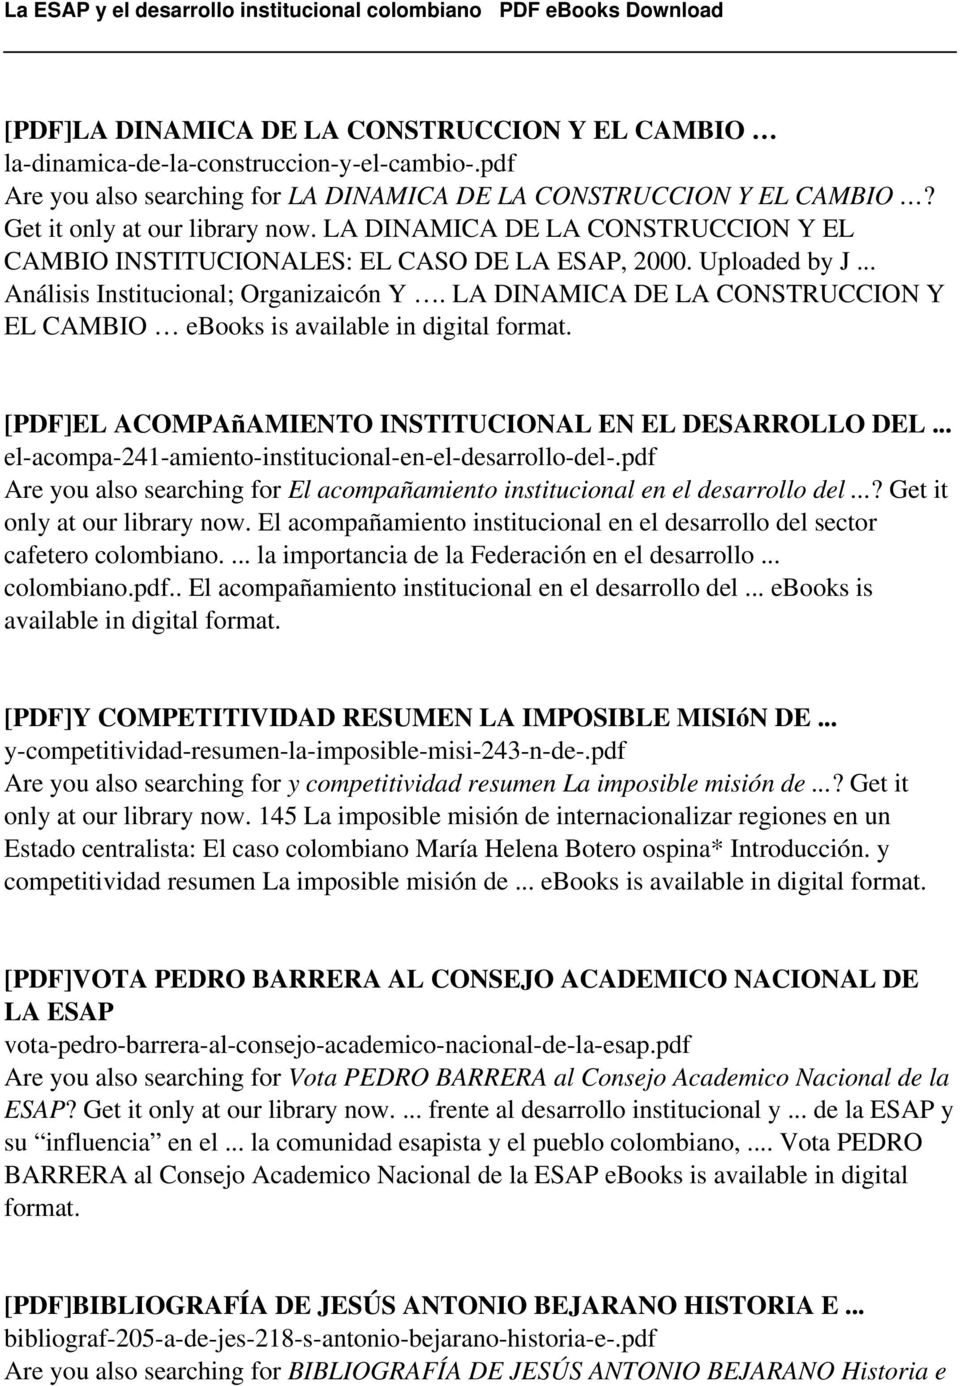 LA DINAMICA DE LA CONSTRUCCION Y EL CAMBIO ebooks is [PDF]EL ACOMPAñAMIENTO INSTITUCIONAL EN EL DESARROLLO DEL... el-acompa-241-amiento-institucional-en-el-desarrollo-del-.